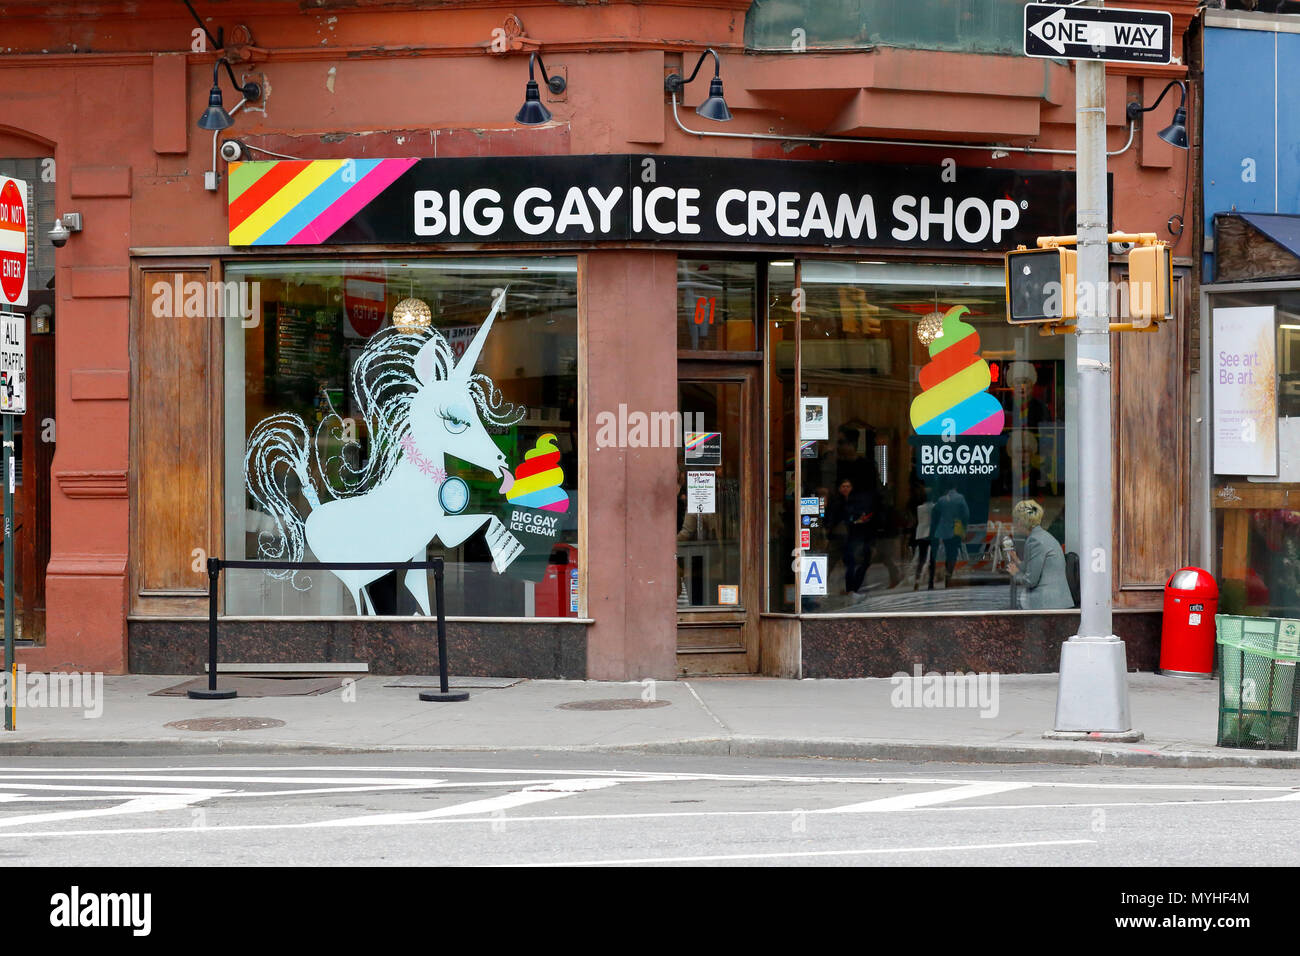 [Tienda histórica] Big Gay Ice Cream Shop, 61 Grove St, Nueva York, NY. Tienda exterior de una heladería en Greenwich Village Foto de stock